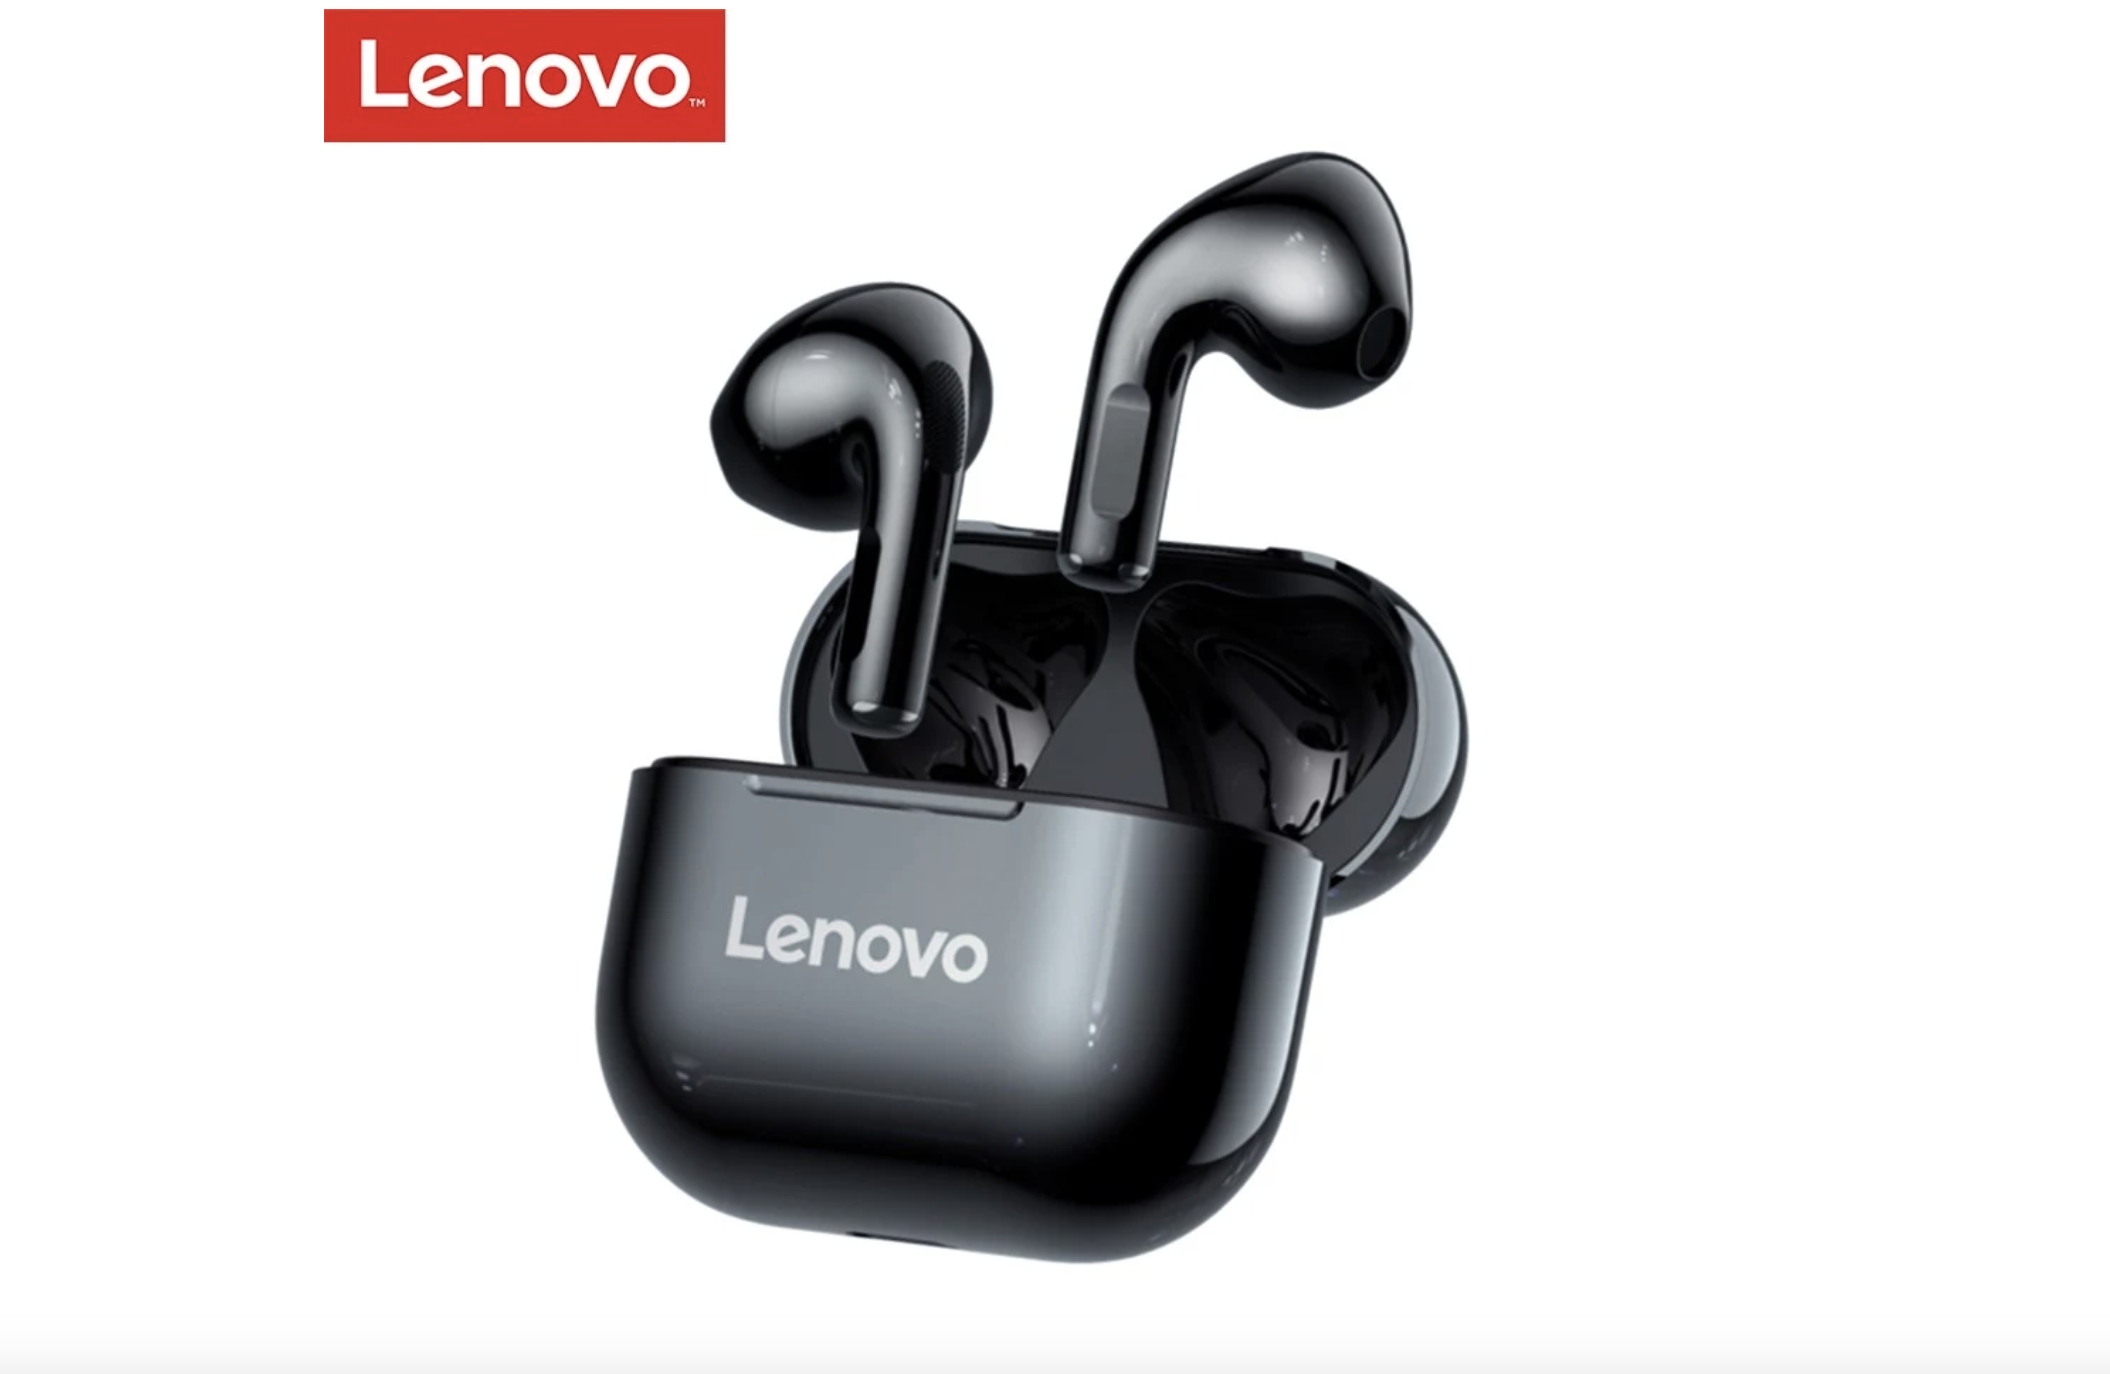 2X bezdrátová sluchátka Lenovo LivePods LP40 s Bluetooth 5 jen za 435 Kč v akci [komerční článek]